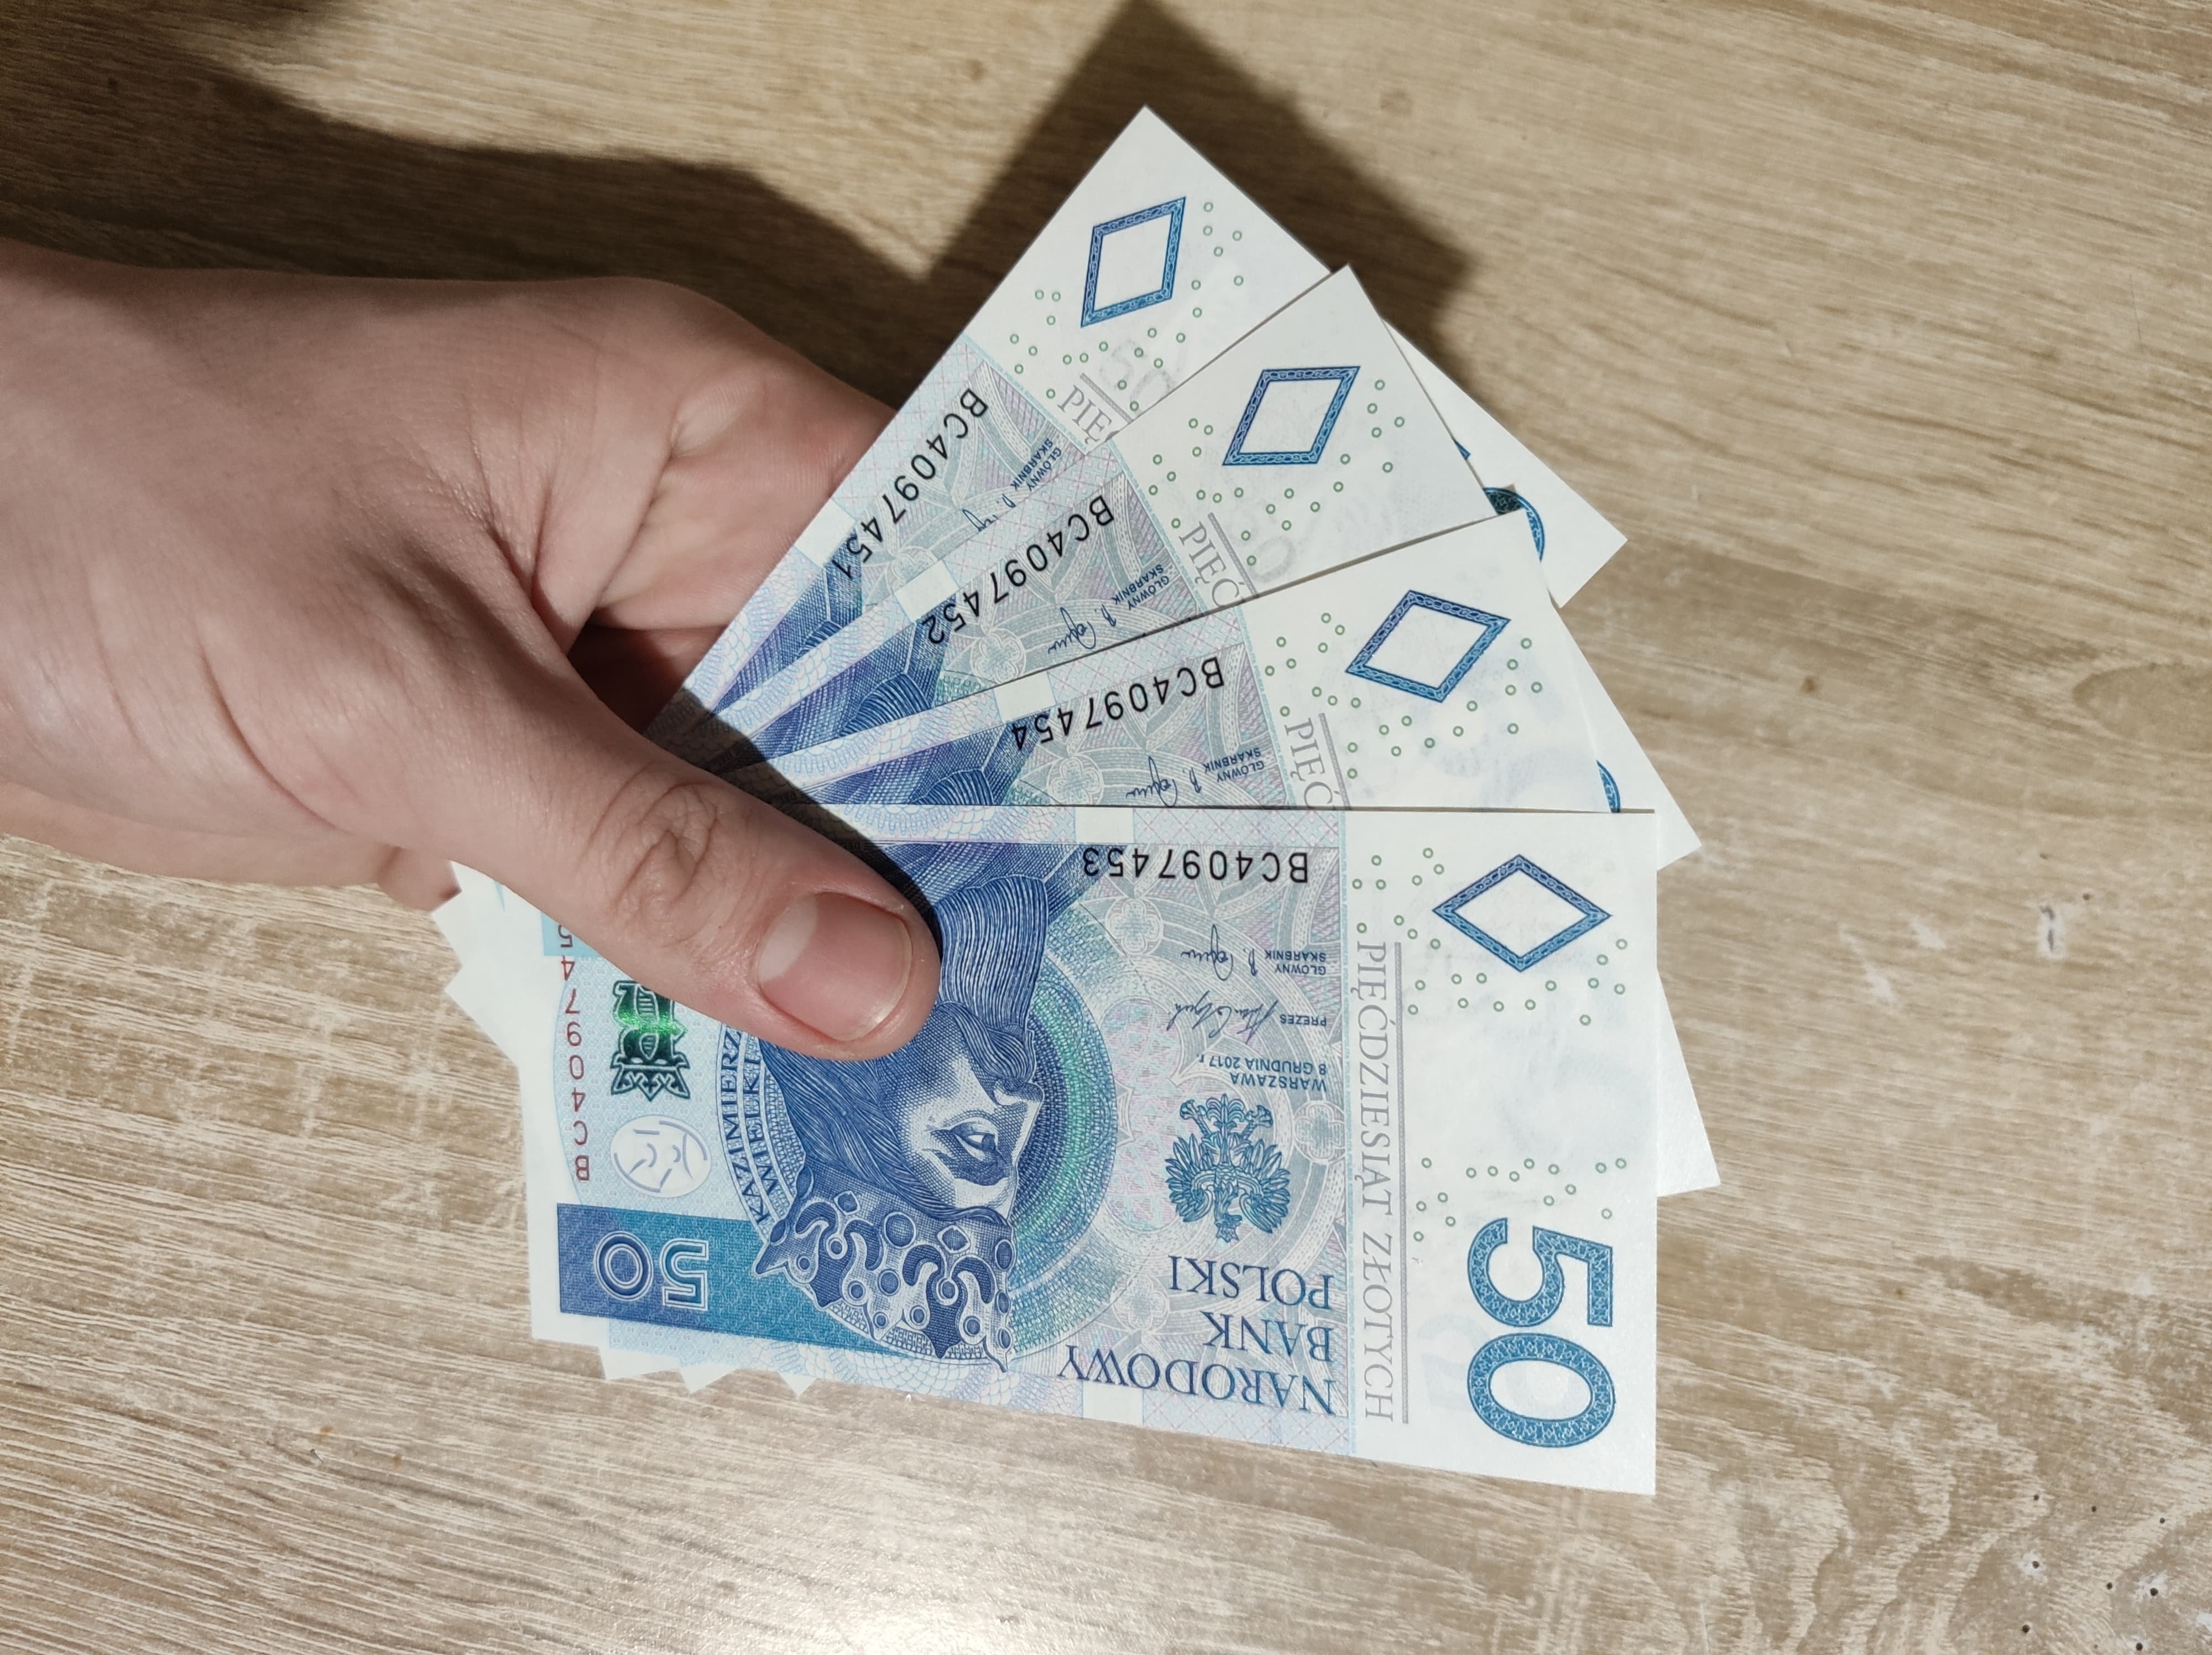 polskie banknoty